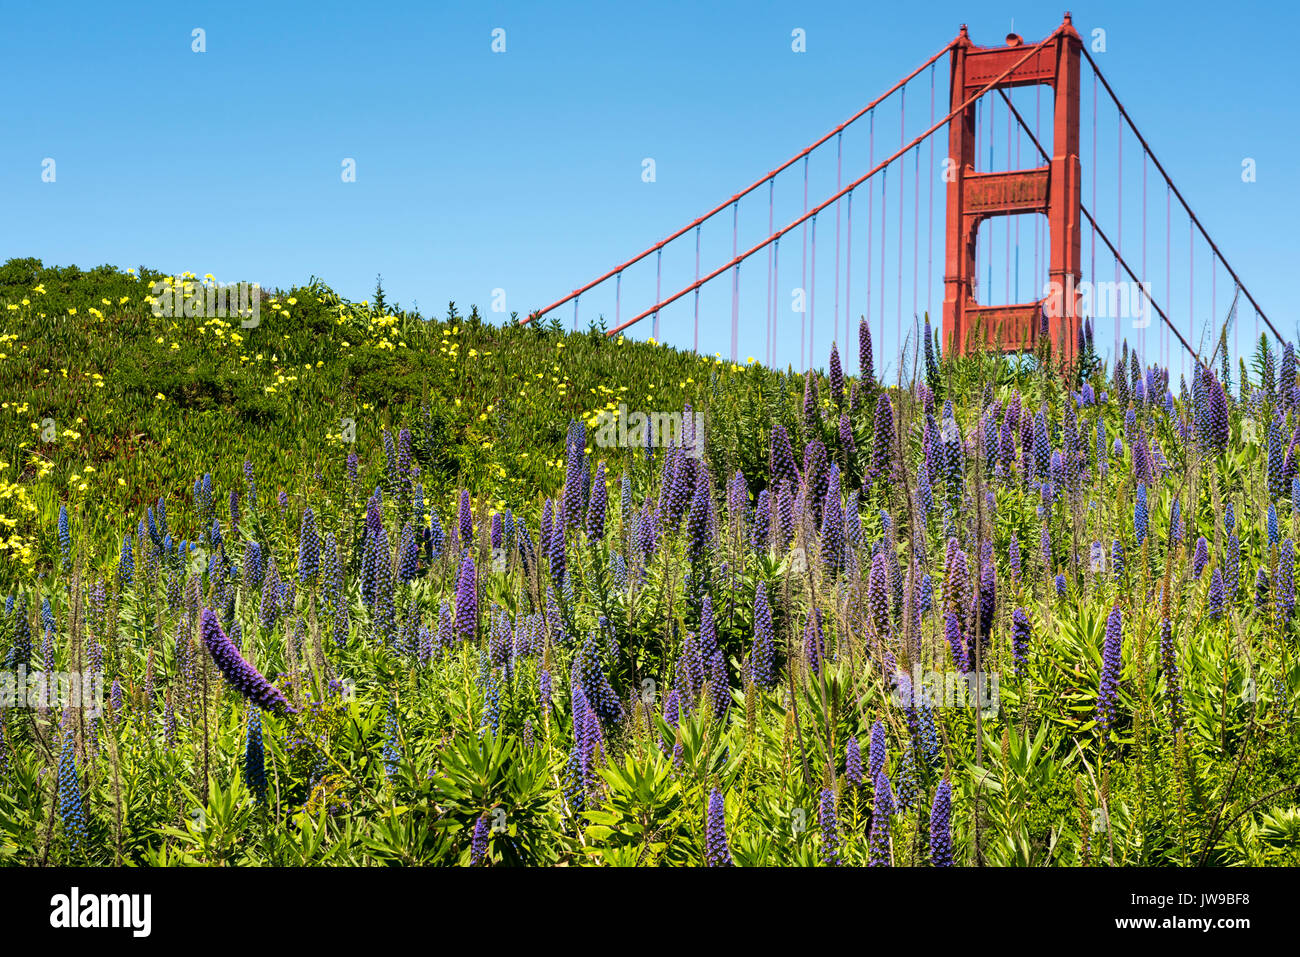 Golden Gate Bridge di San Francisco - rosso struttura in acciaio lucido contro il cielo blu con in primo piano del Echium viola Foto Stock